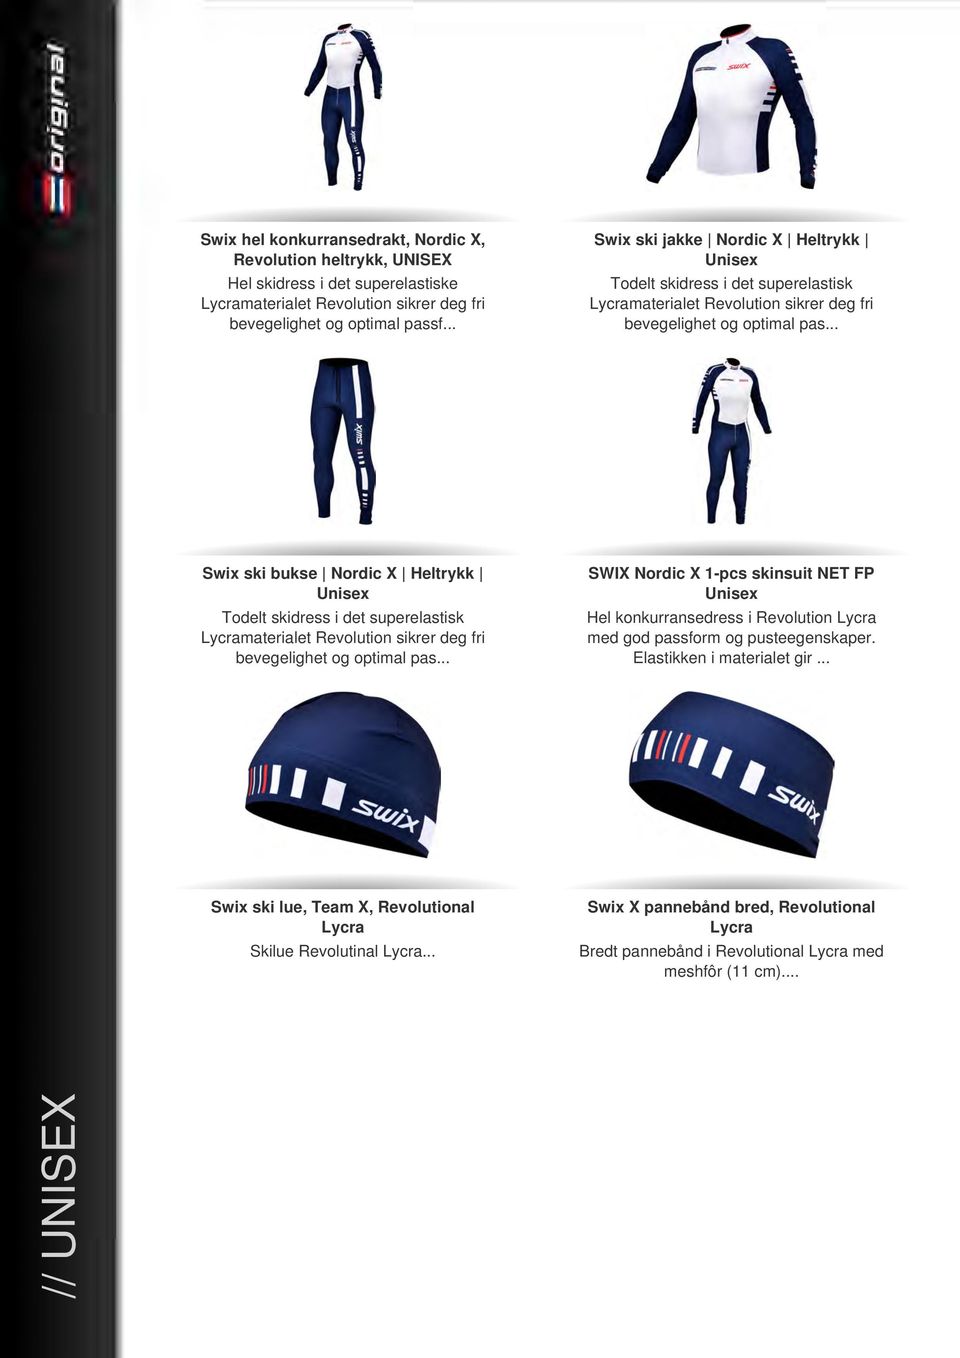 .. Swix ski bukse Nordic X Heltrykk Unisex Todelt skidress i det superelastisk Lycramaterialet Revolution sikrer deg fri bevegelighet og optimal pas.